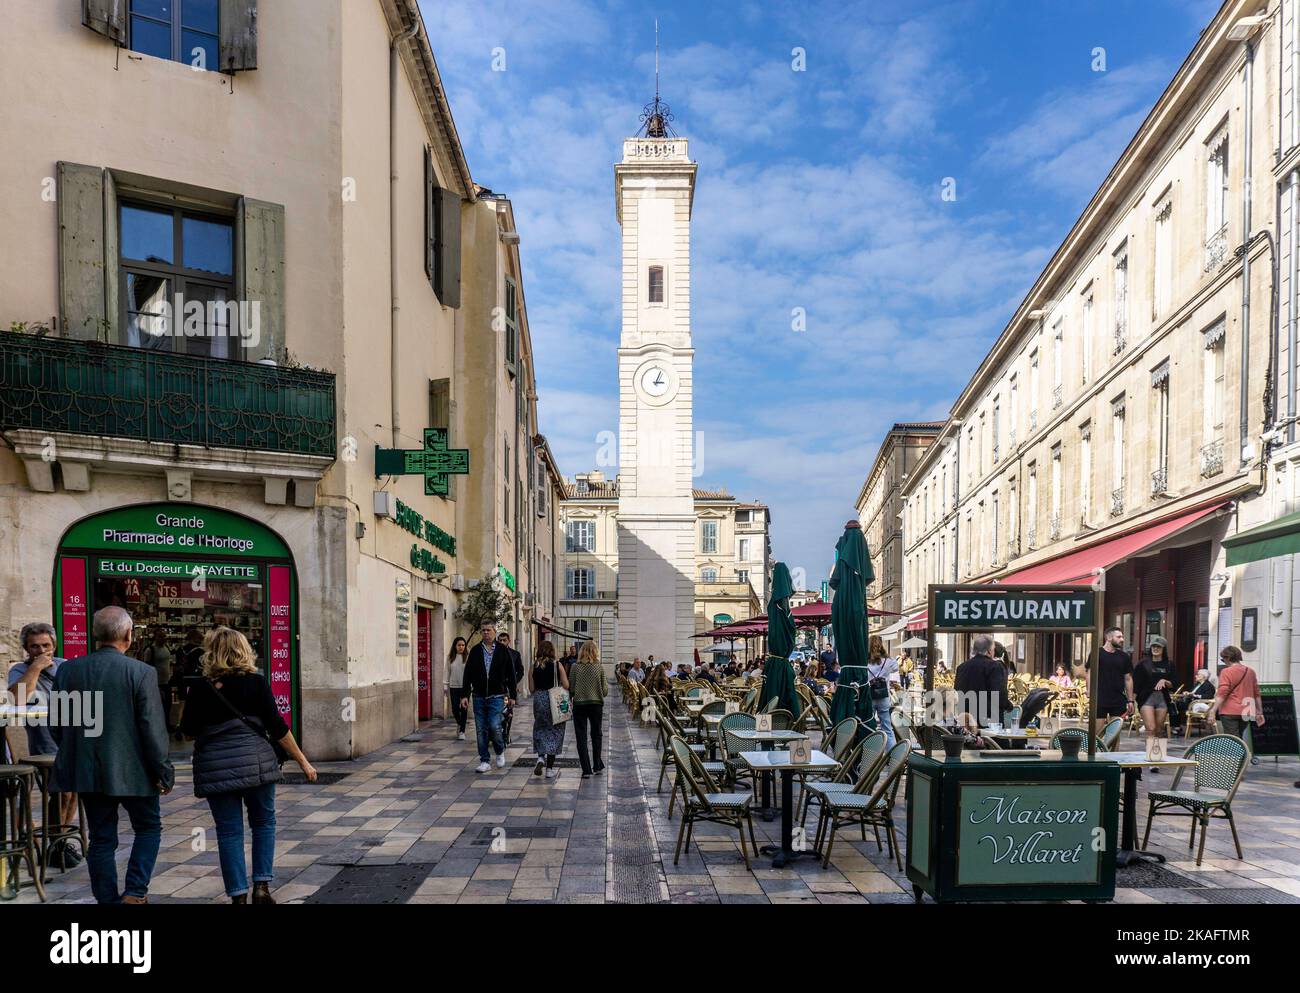 Dîner dehors et vie de rue à la place de l’horloge, Nîmes, France Banque D'Images